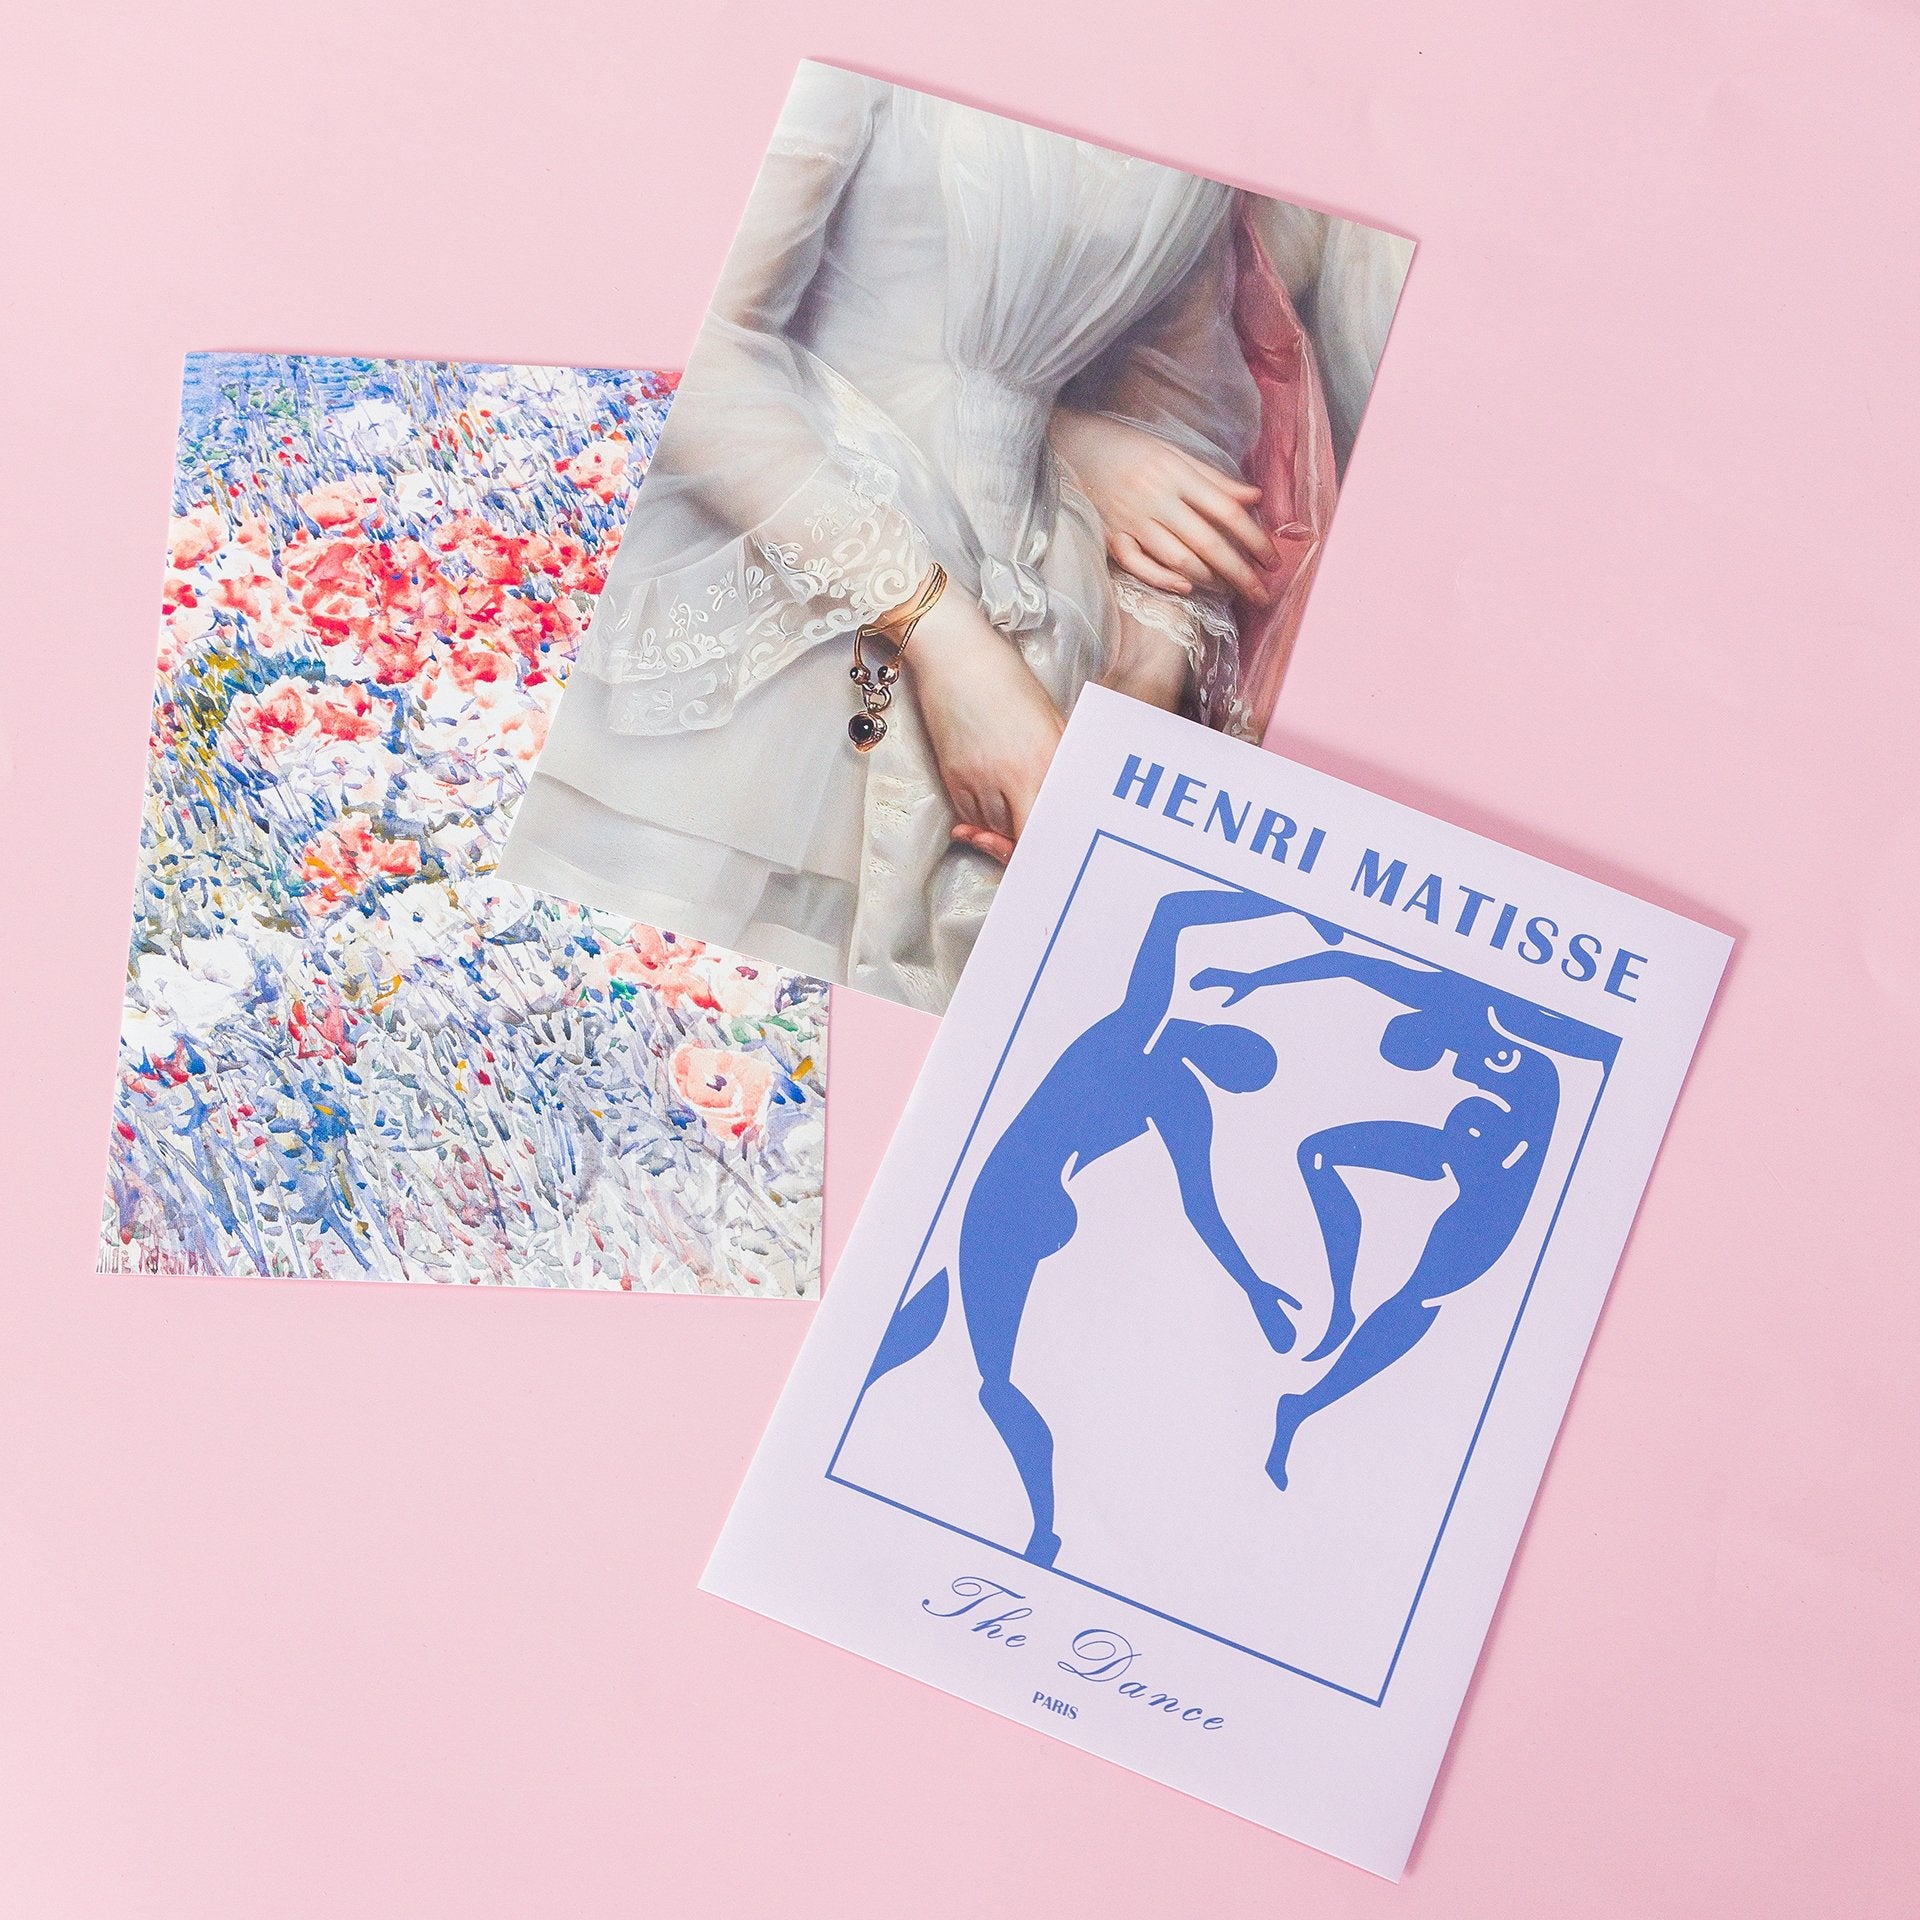 Set de 3 pósters adhesivos reposicionables: Estilo Matisse 01 - Tienda Pasquín